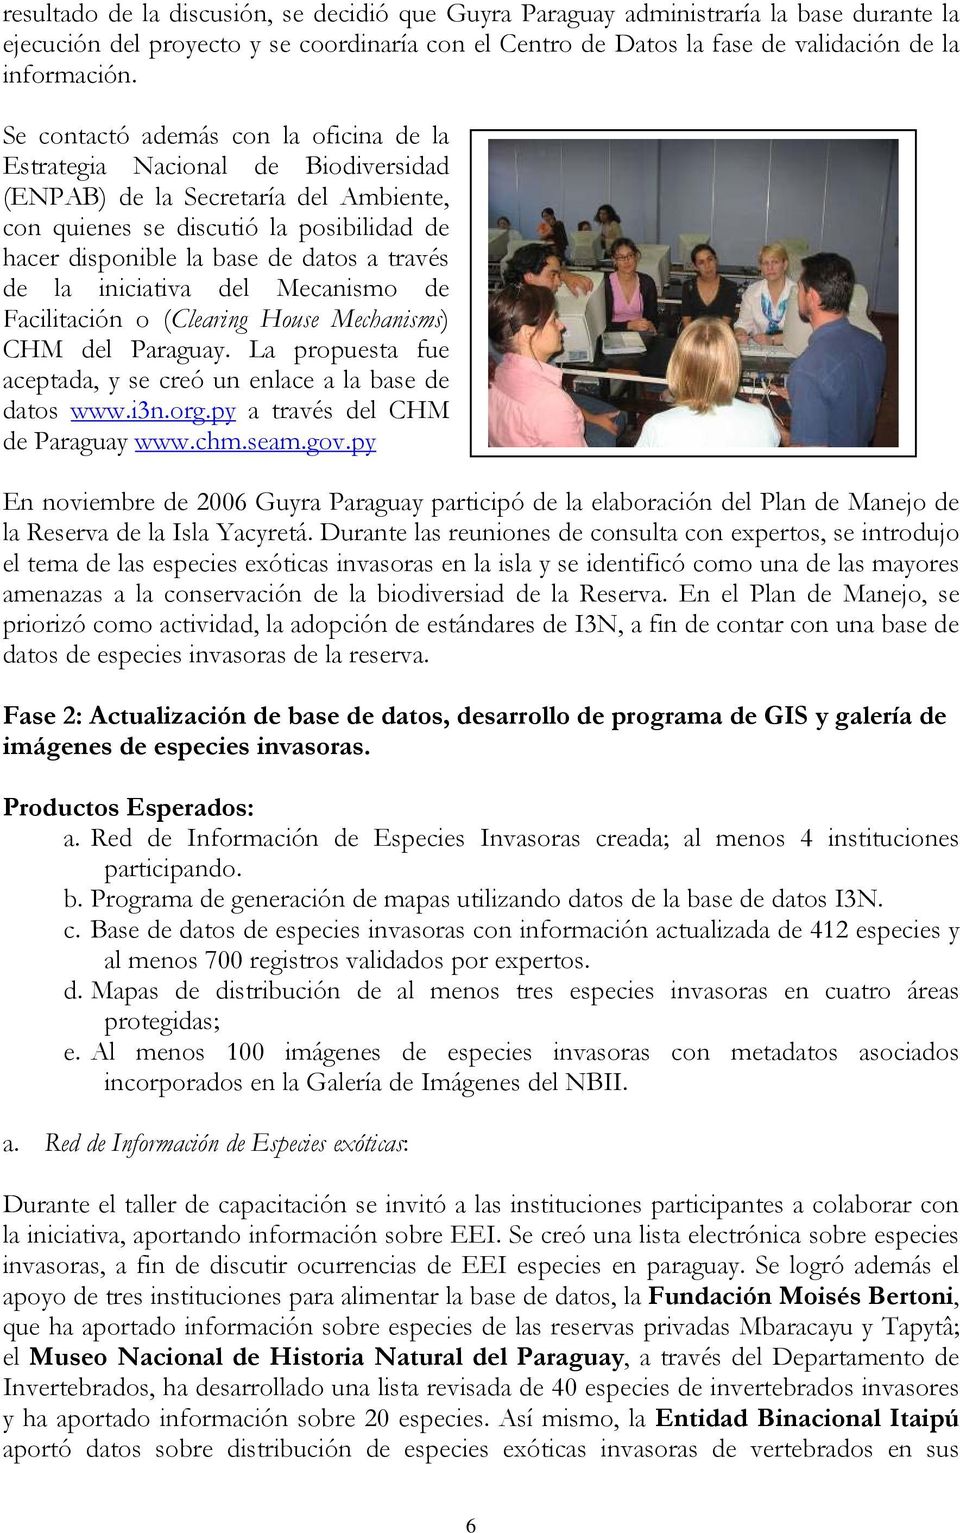 través de la iniciativa del Mecanismo de Facilitación o (Clearing House Mechanisms) CHM del Paraguay. La propuesta fue aceptada, y se creó un enlace a la base de datos www.i3n.org.